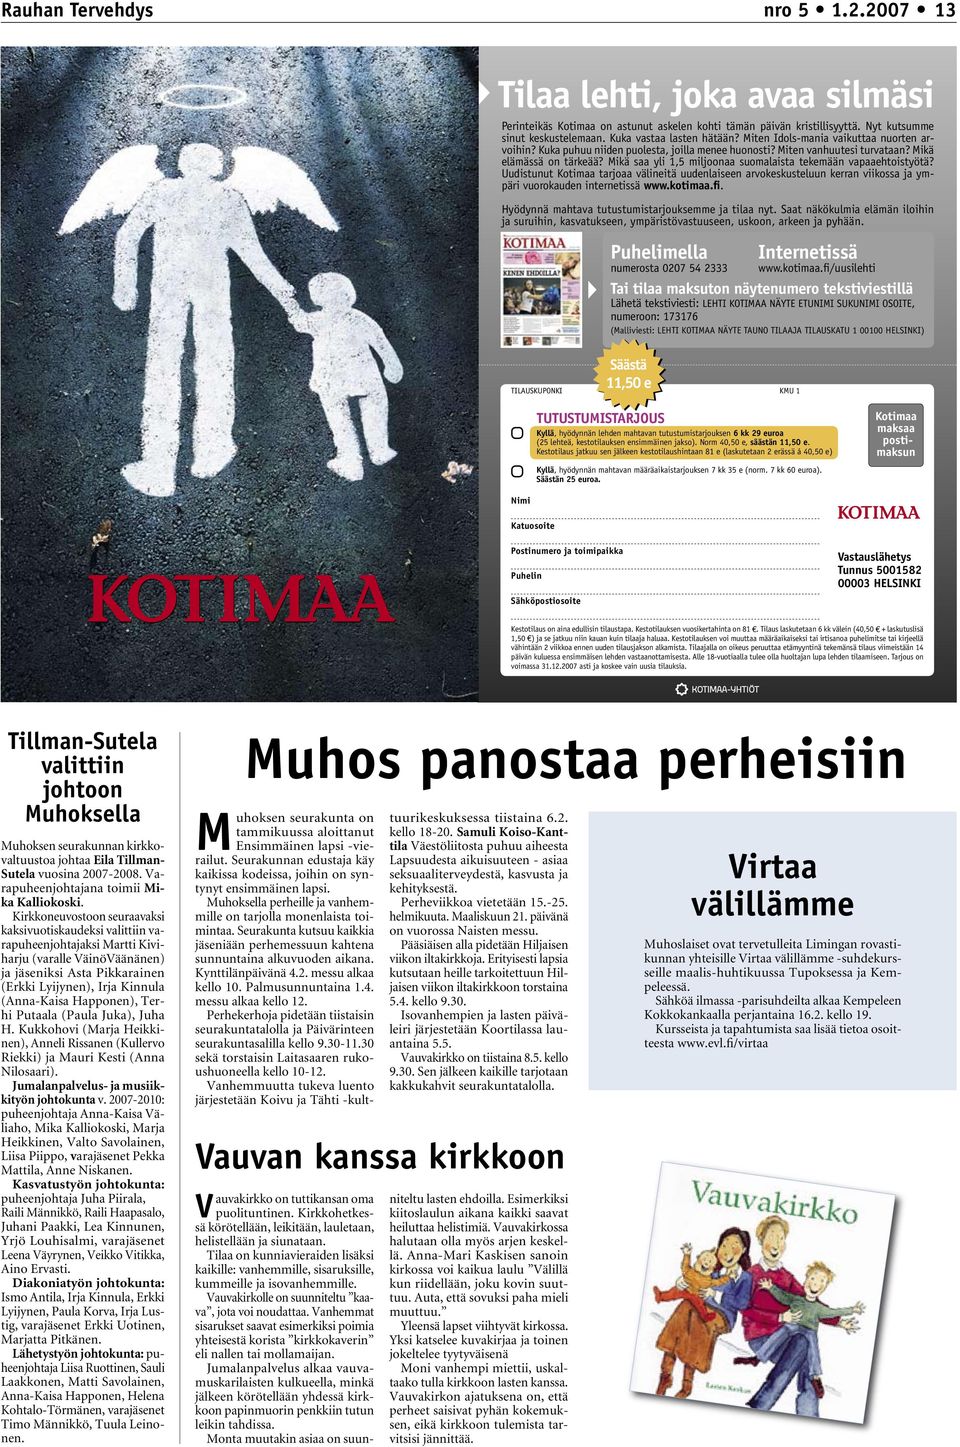 Mikä saa yli 1,5 miljoonaa suomalaista tekemään vapaaehtoistyötä? Uudistunut Kotimaa tarjoaa välineitä uudenlaiseen arvokeskusteluun kerran viikossa ja ympäri vuorokauden internetissä www.kotimaa.fi.